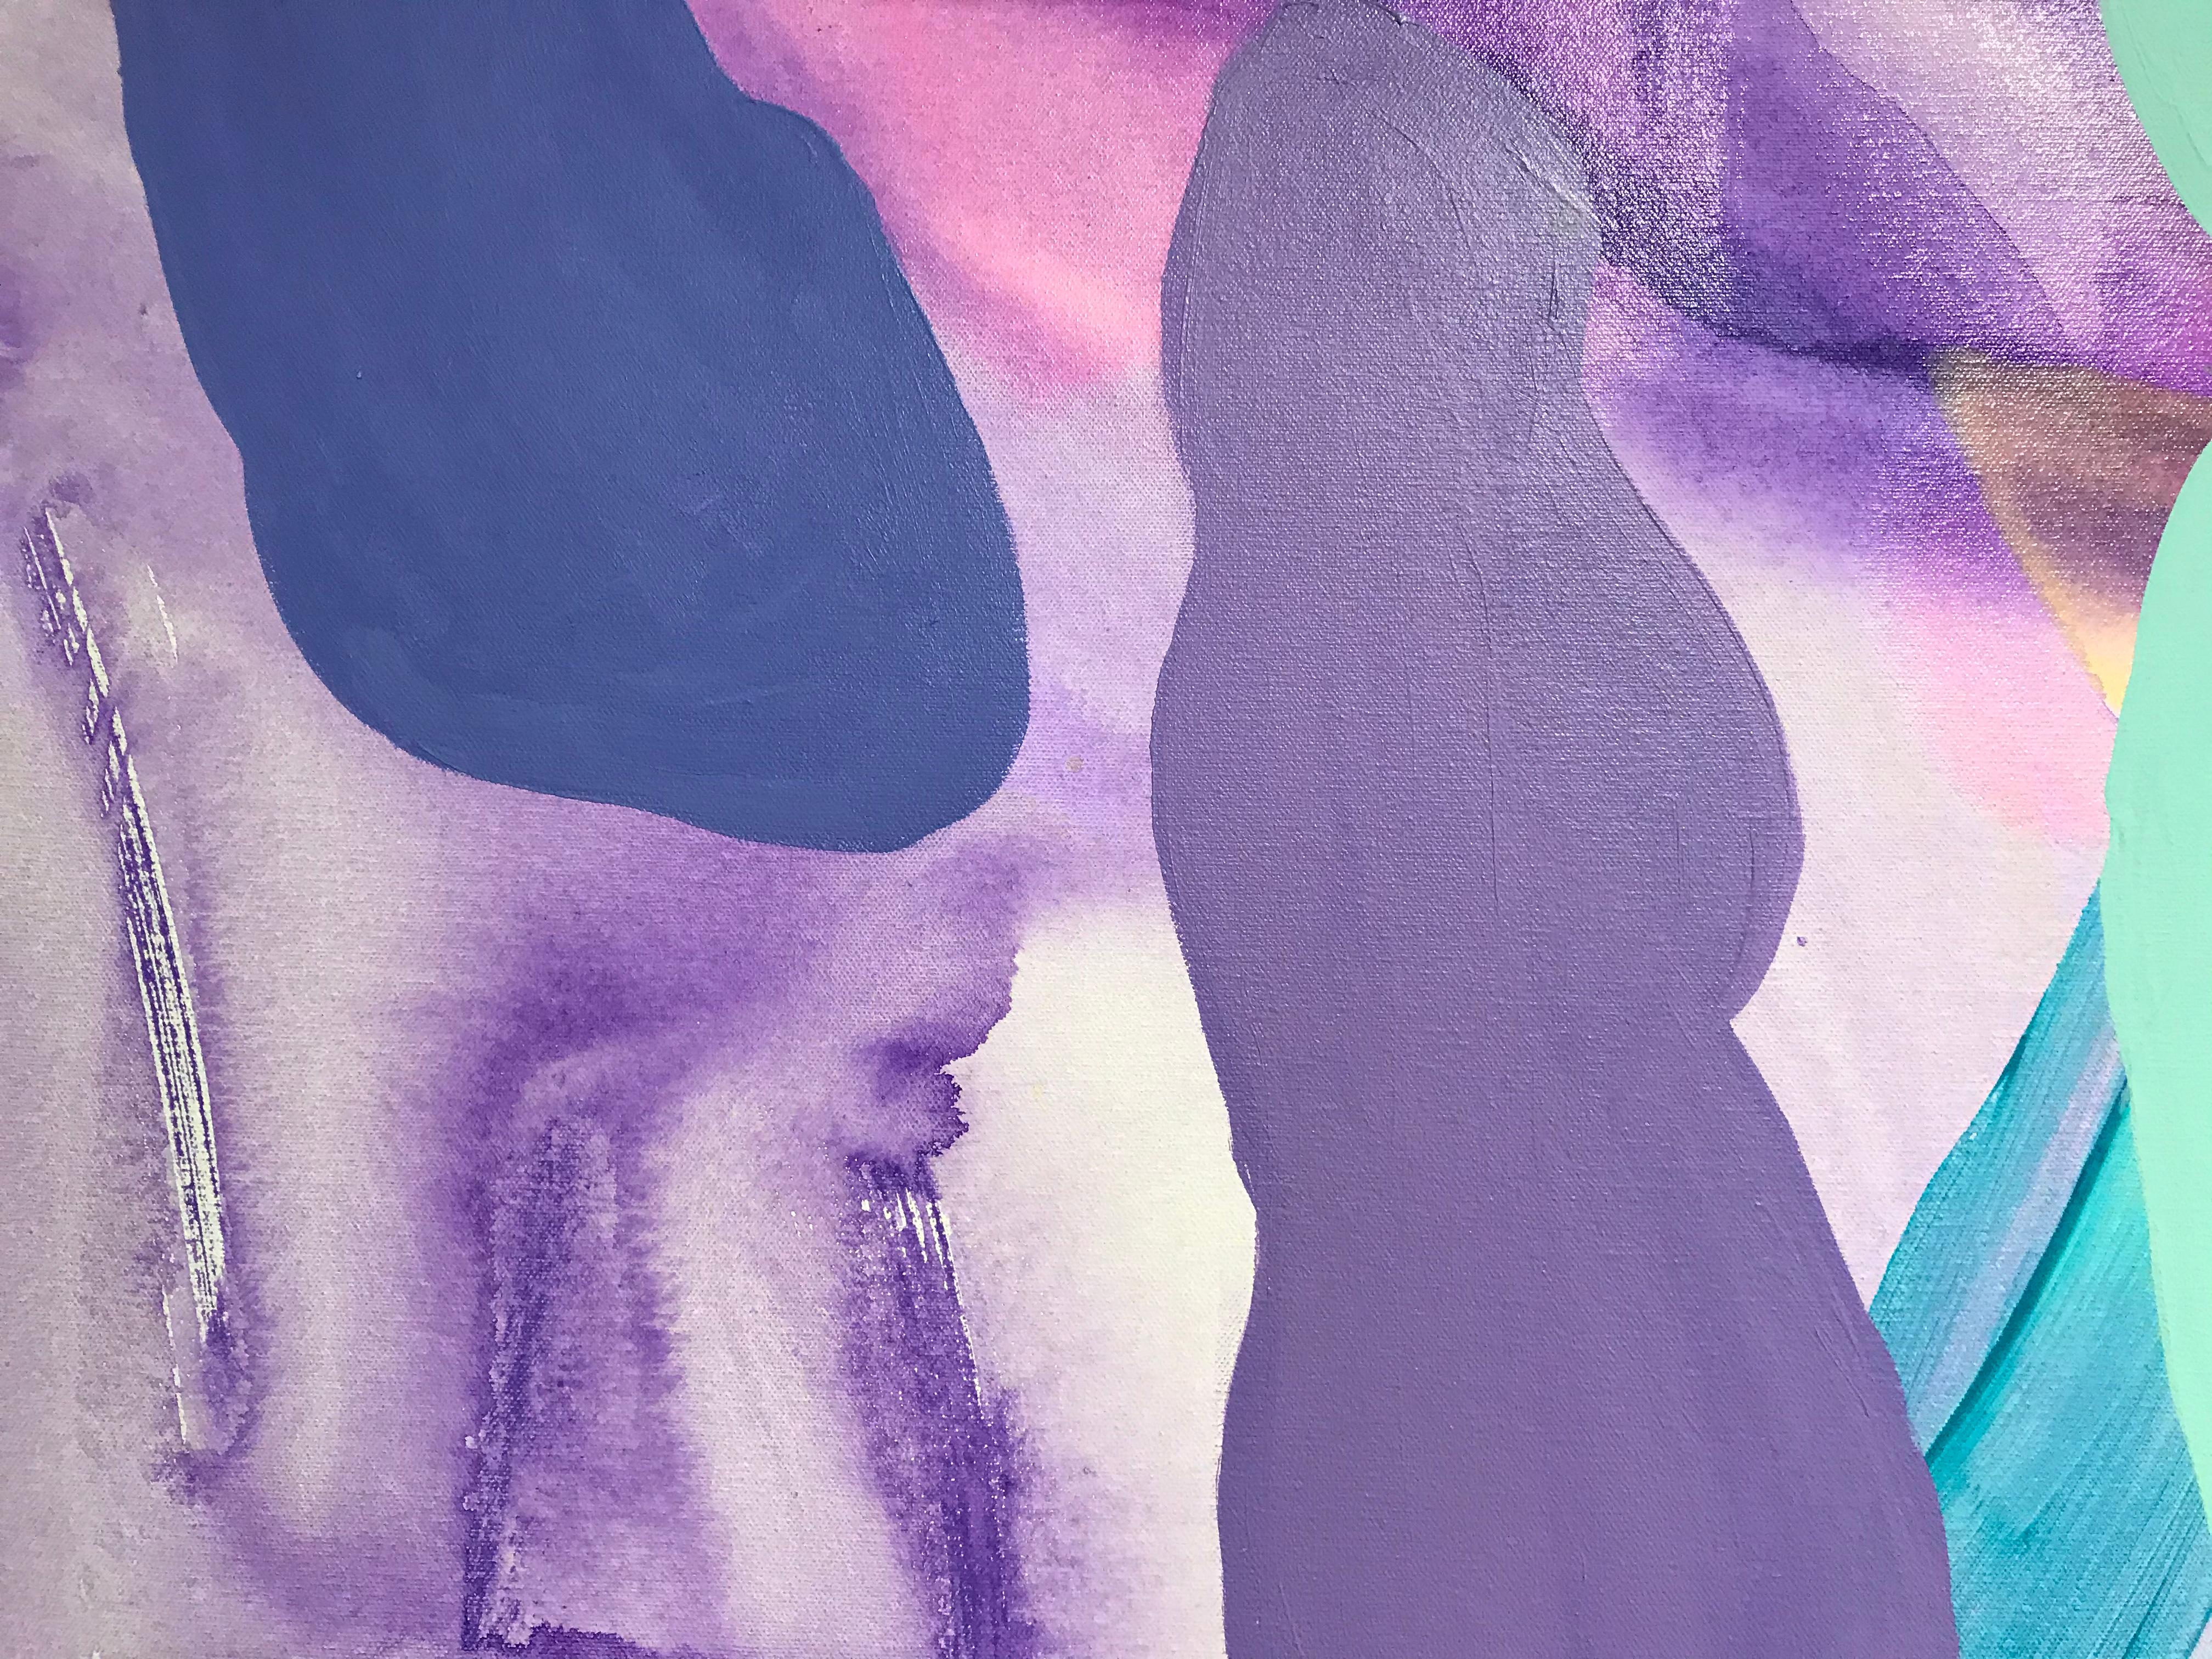 Des formes verticales allongées en rose, mauve, lavande et bleu turquoise s'élèvent sur un champ stratifié de fond blanc crème brossé de violet dans cette peinture abstraite à grande échelle. Des touches de rouge et d'orange se fondent dans un rose